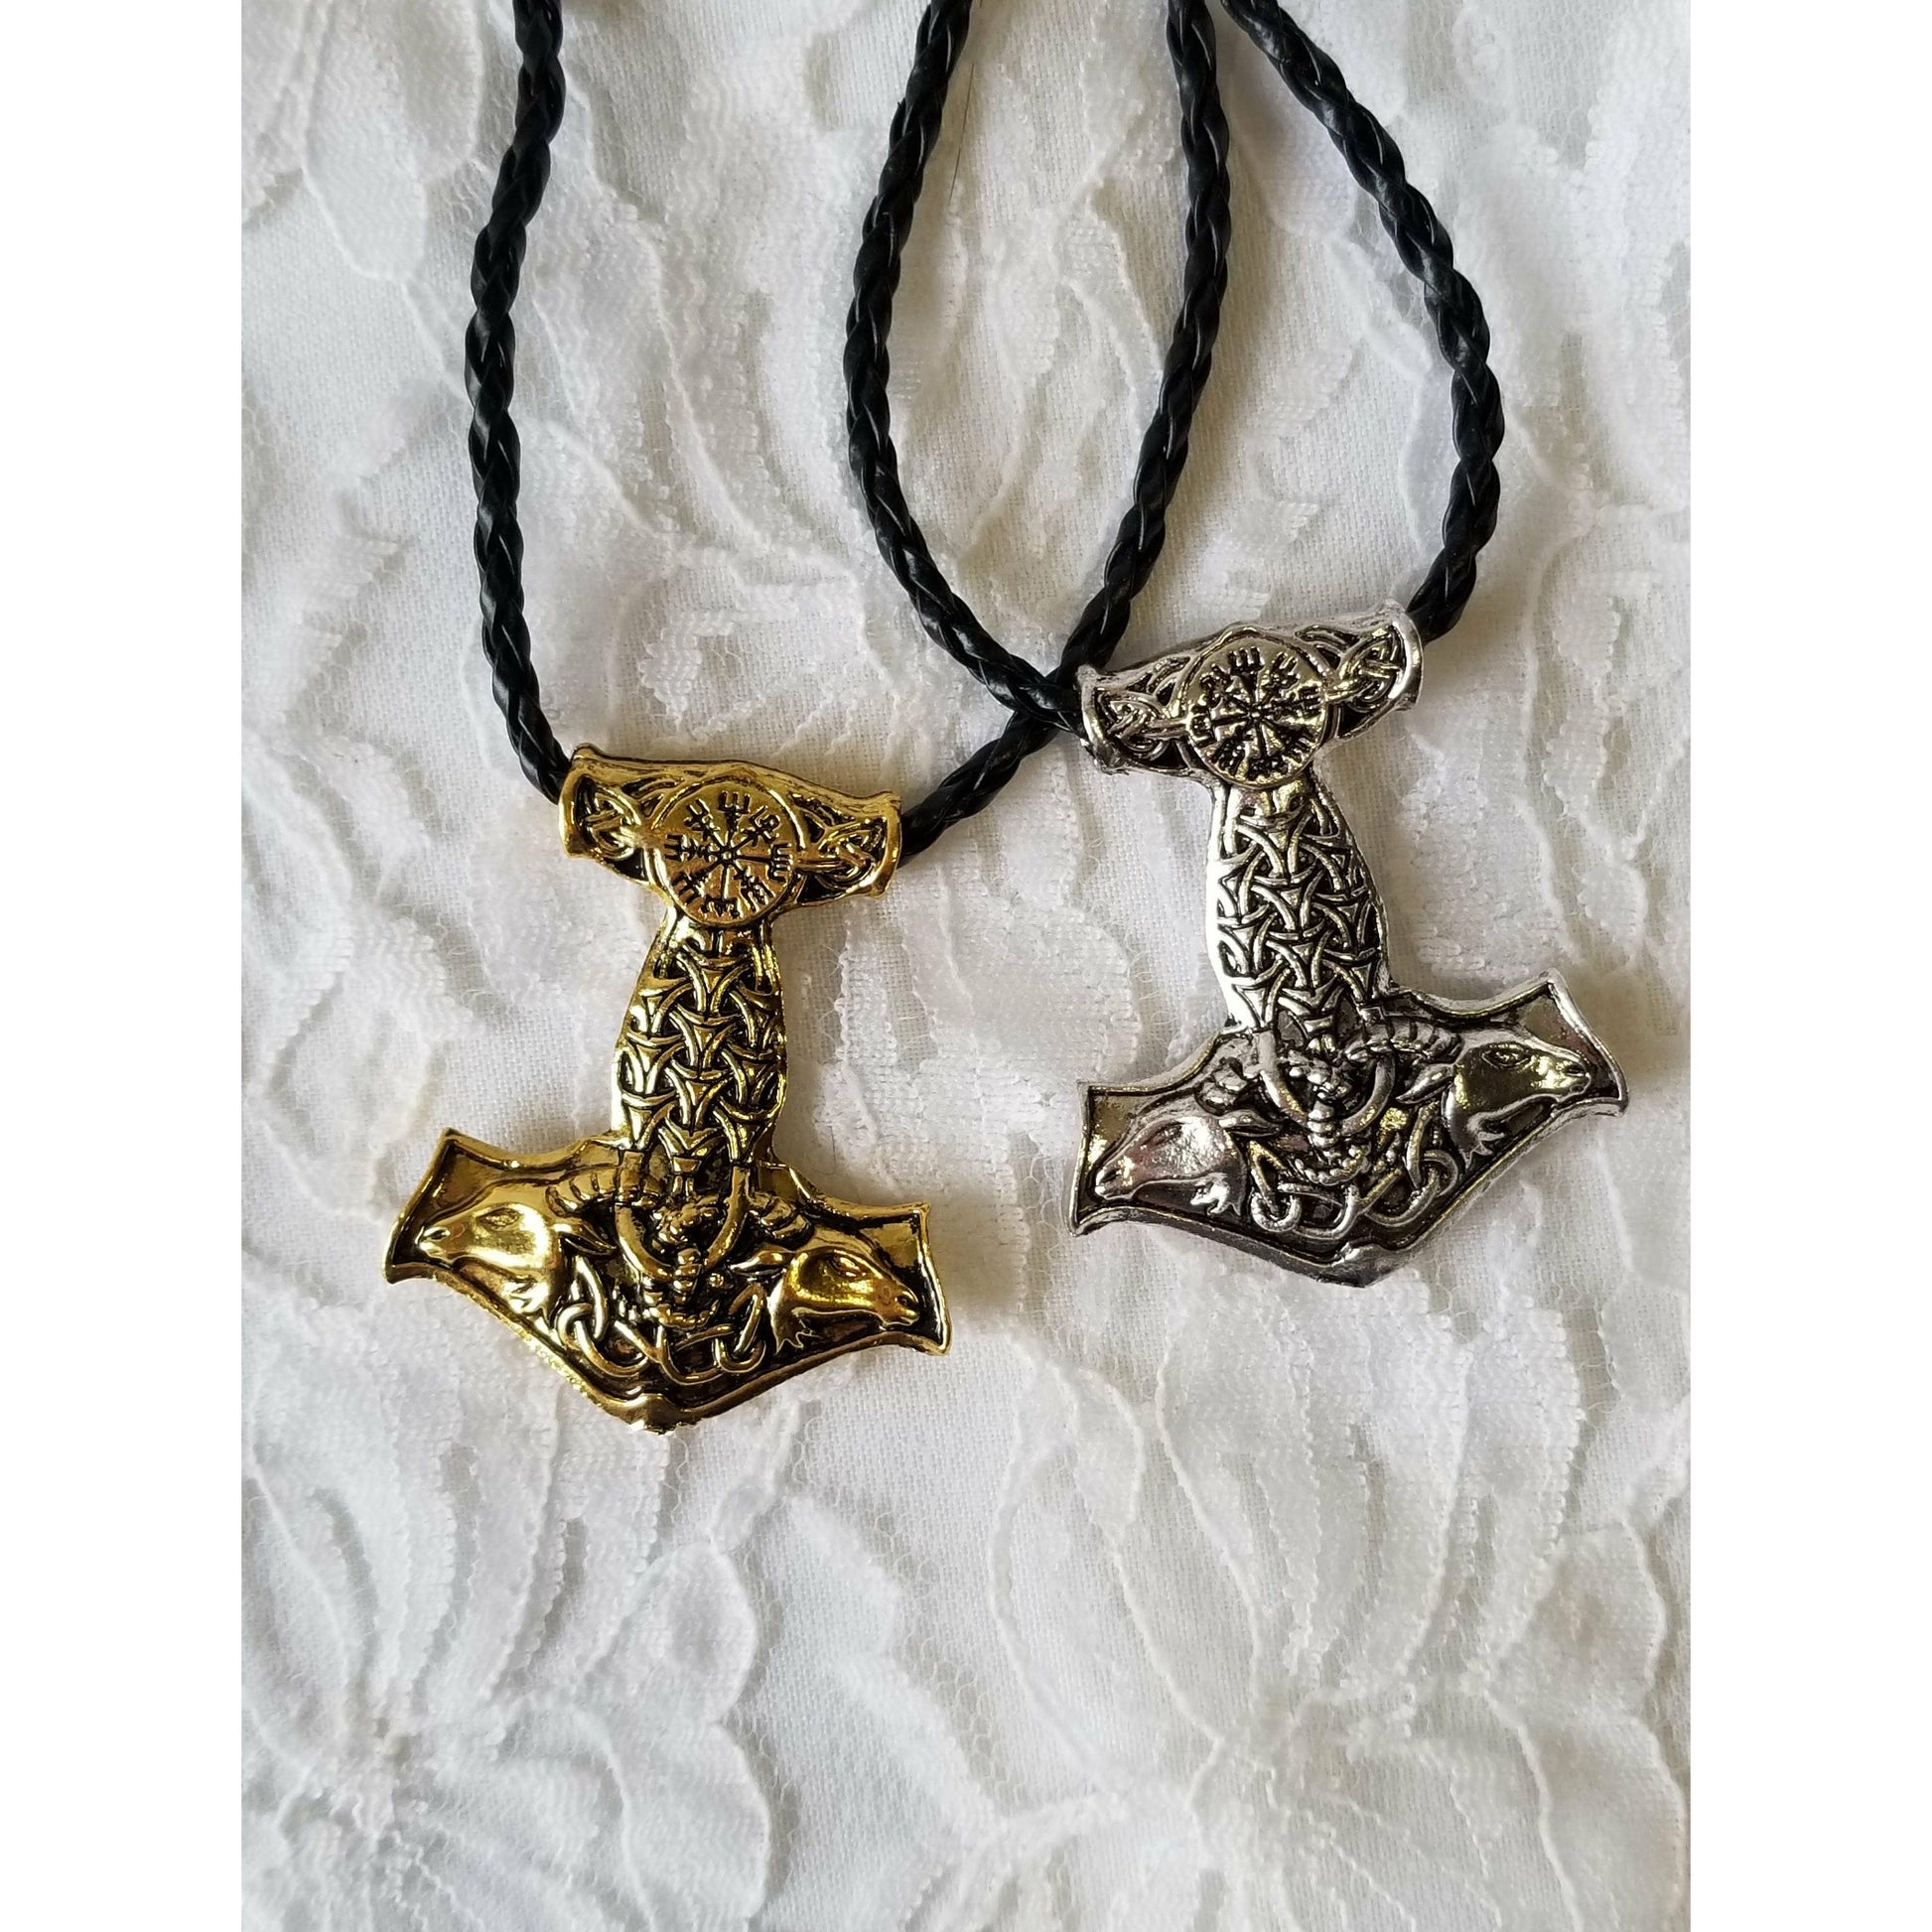 Seiðr THOR's HAMMER Mjölnir Necklace Gift for Him (or Her) Talisman Amulet Pendant ~